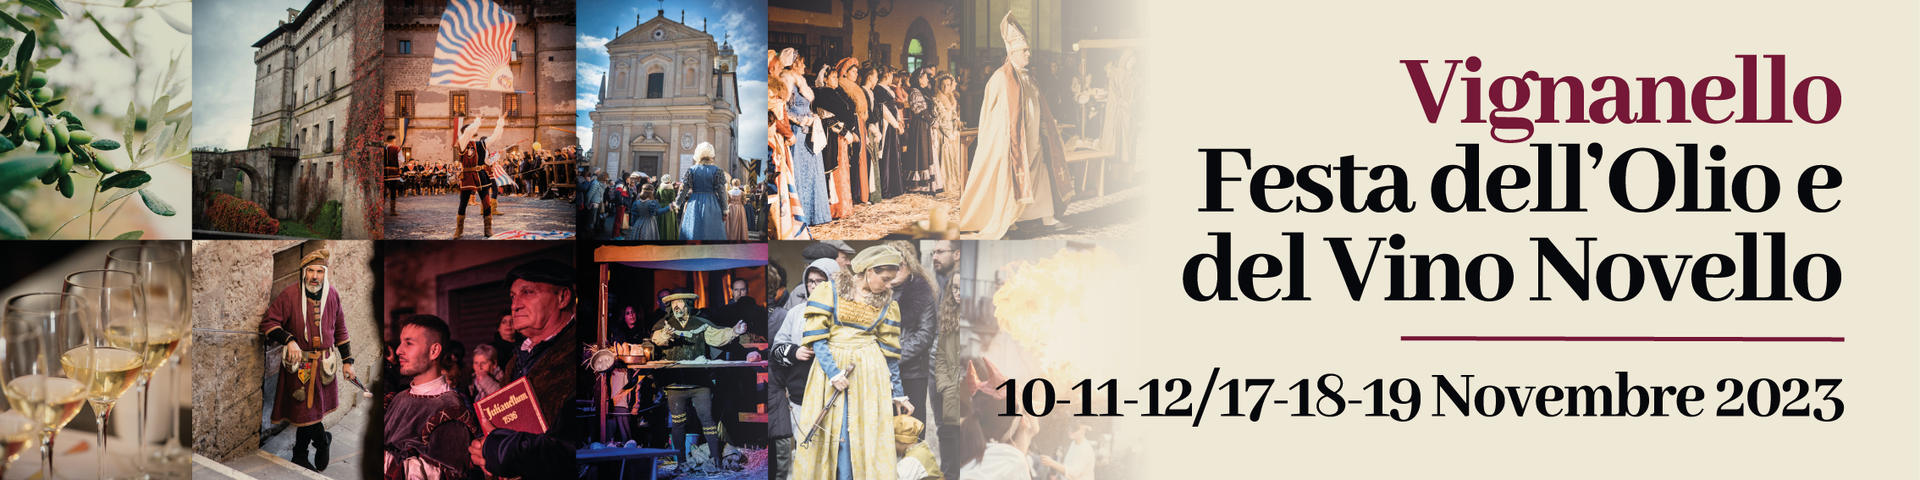 <strong>FESTA DELL’OLIO E DEL VINO NOVELLO DI VIGNANELLO: il programma dei due fine settimana (10 -11-12 e 17-18-19 novembre)</strong>